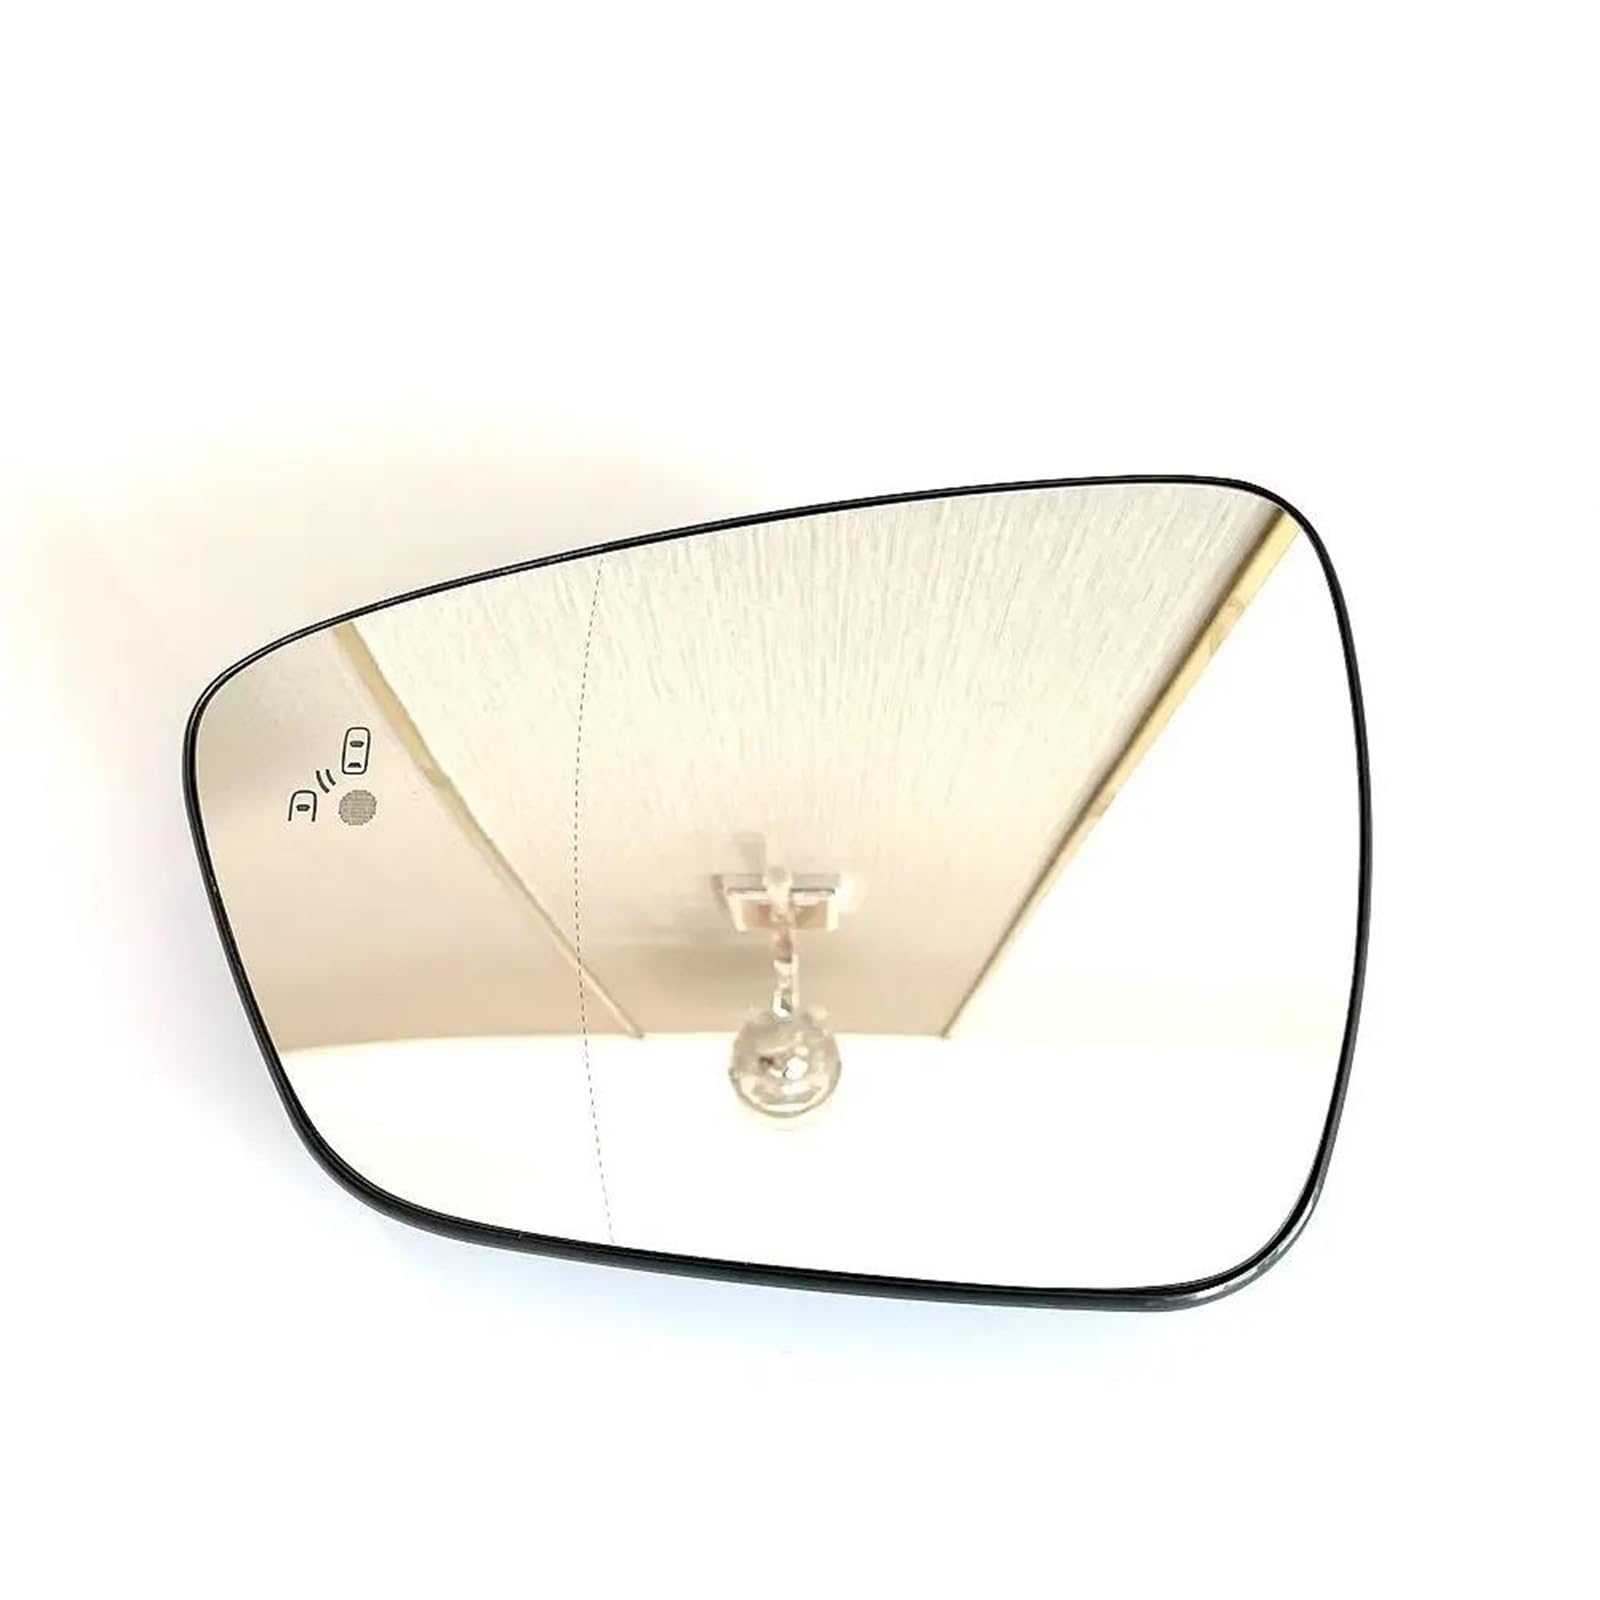 Seitenspiegelglas Für FORD Für KUGA 2020 2021 2022 Beheizte Weitwinkel Auto Spiegel Glas Mit Blind Spot Warnung Autospiegelglas (Farbe : Left) von YUONUO